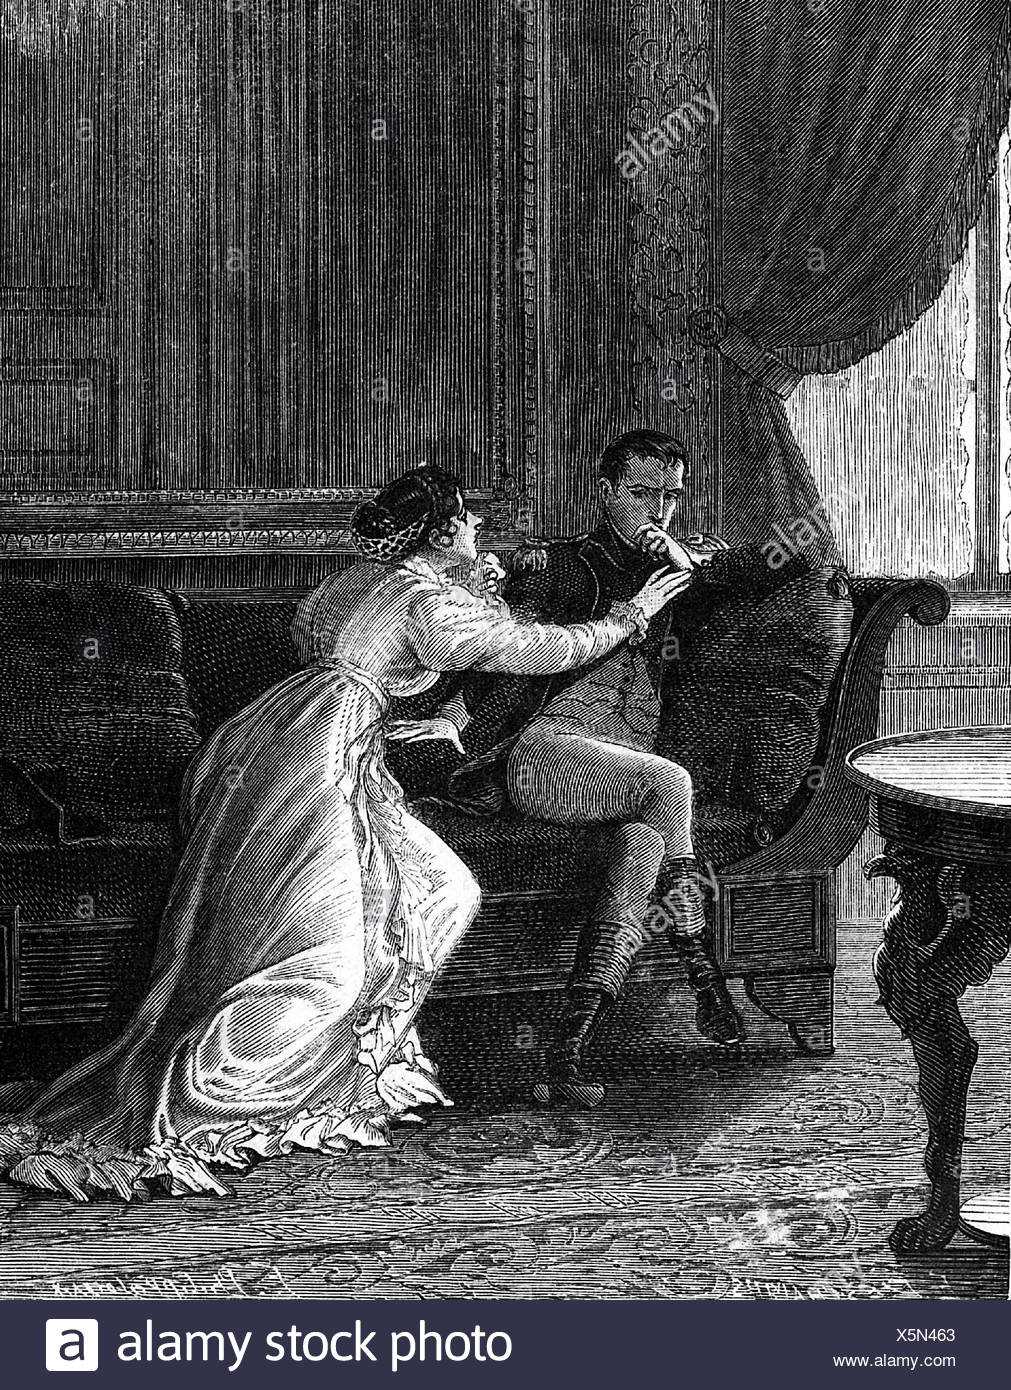 Наполеон и жозефина: история любви | astro7